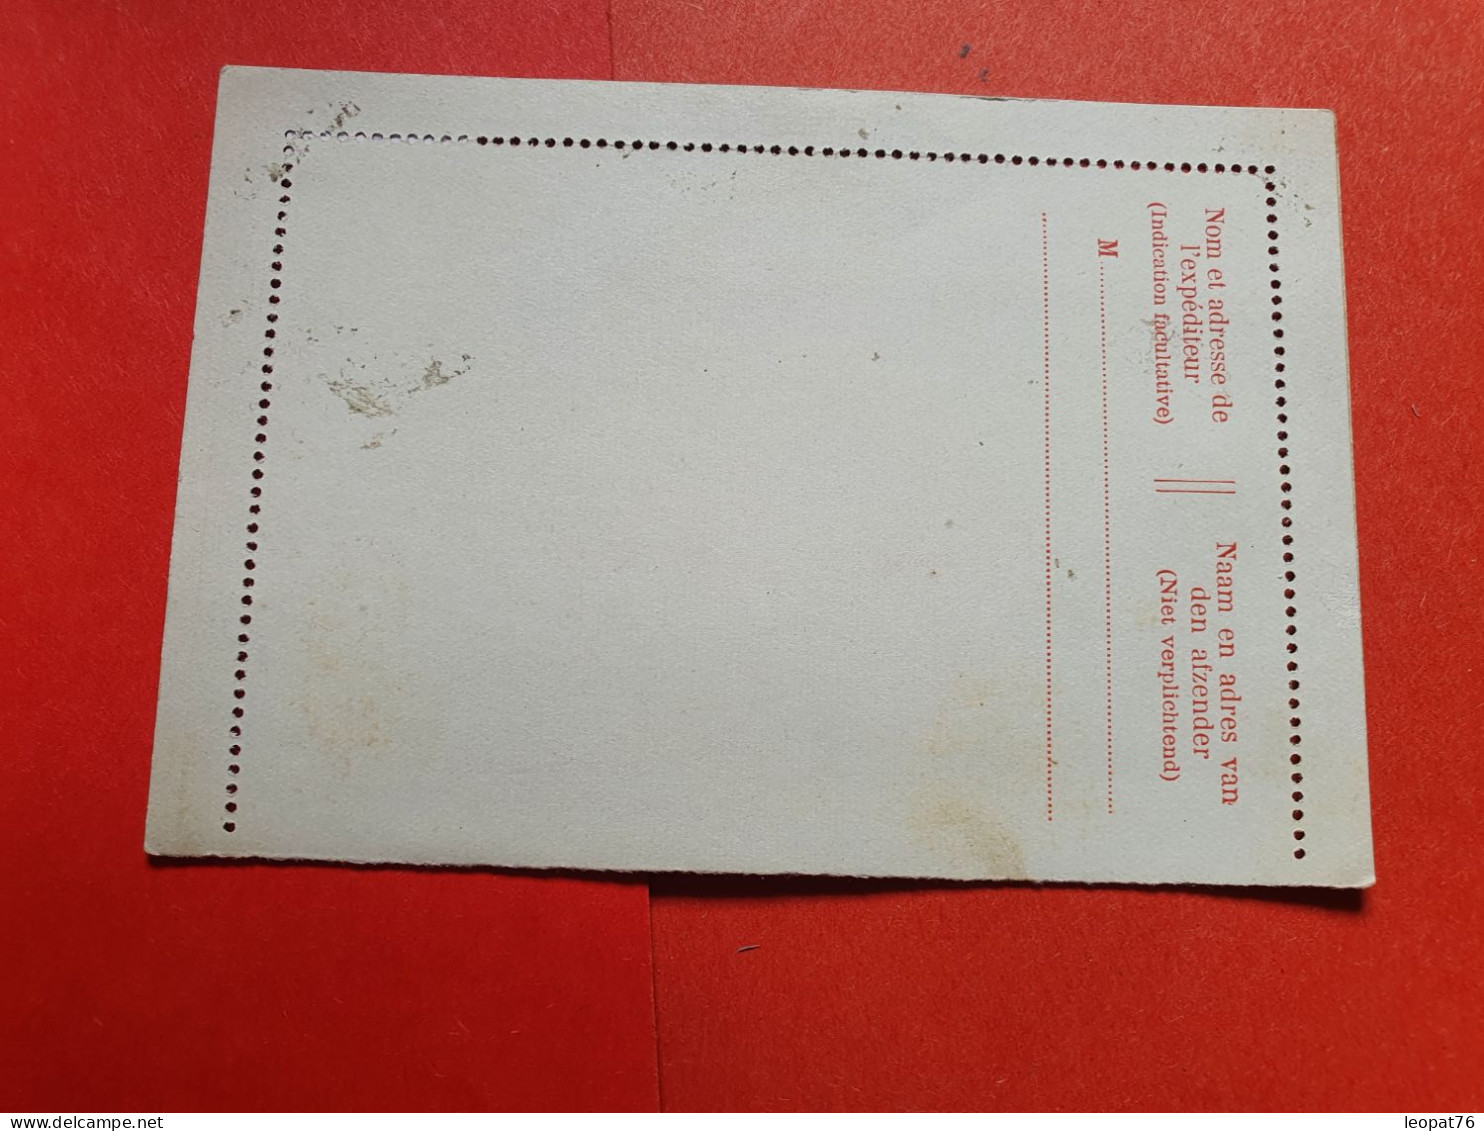 Belgique - Entier Postal Non Circulé - Réf 1637 - Cartes-lettres